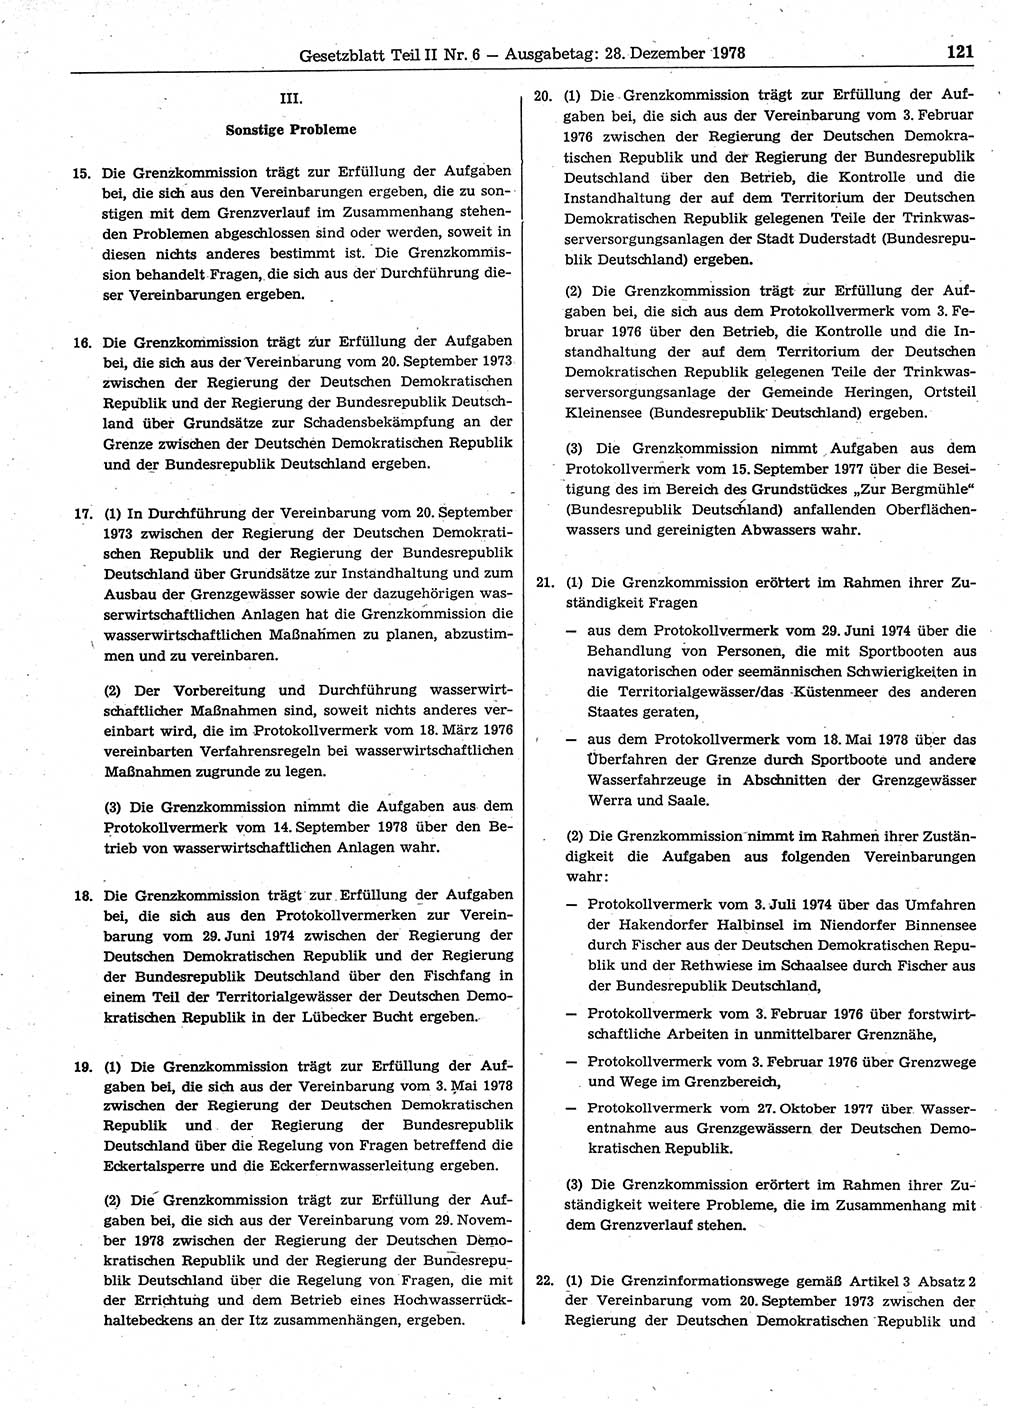 Gesetzblatt (GBl.) der Deutschen Demokratischen Republik (DDR) Teil ⅠⅠ 1978, Seite 121 (GBl. DDR ⅠⅠ 1978, S. 121)